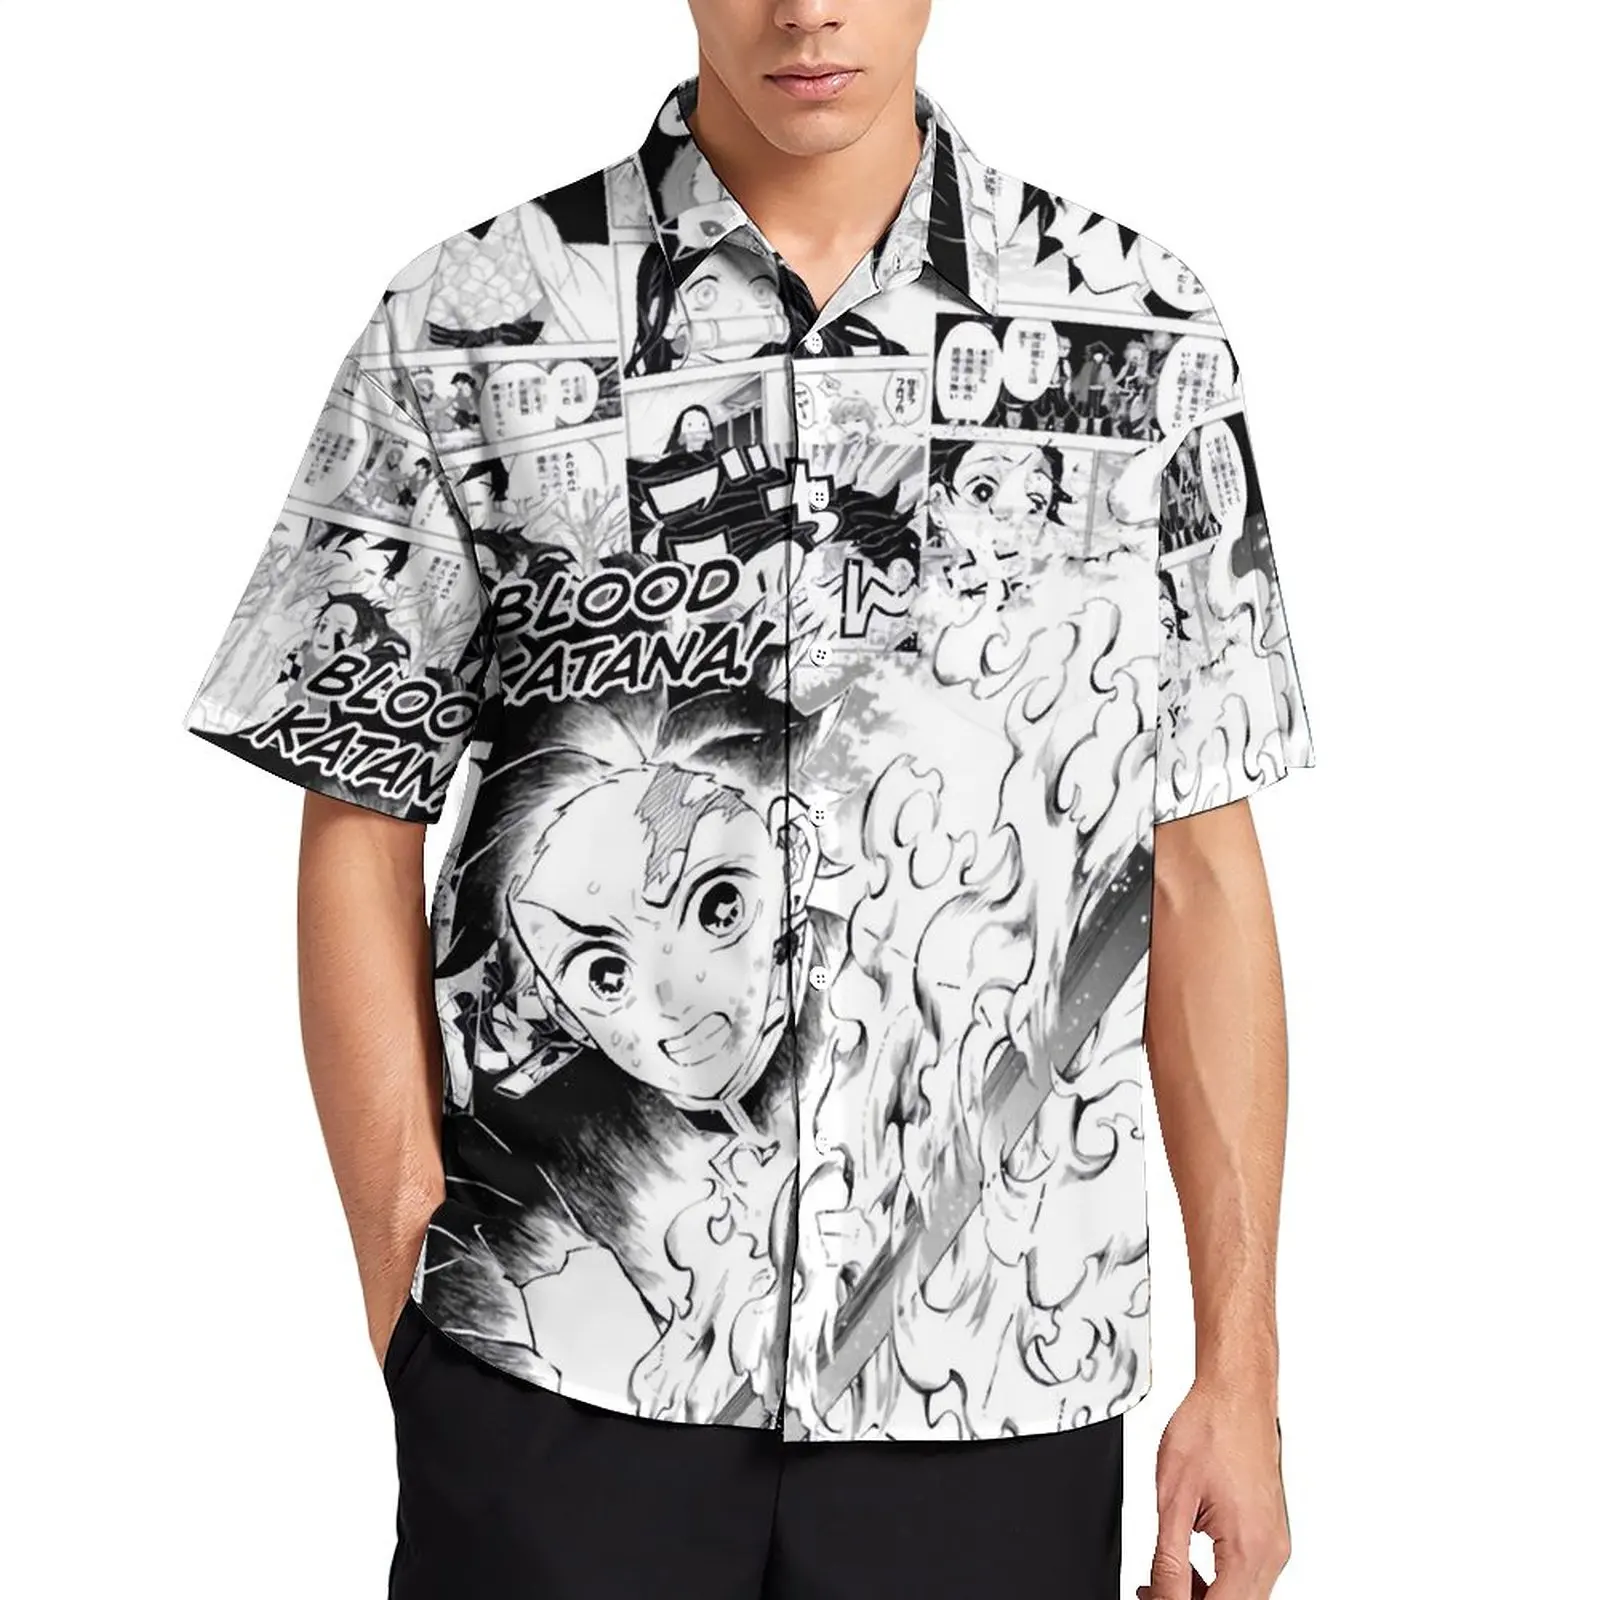 

Мужская Повседневная рубашка с принтом демона, Slayer Manga, Kimetsu No Yaiba, Пляжная рубашка, гавайская уличная одежда, большие размеры